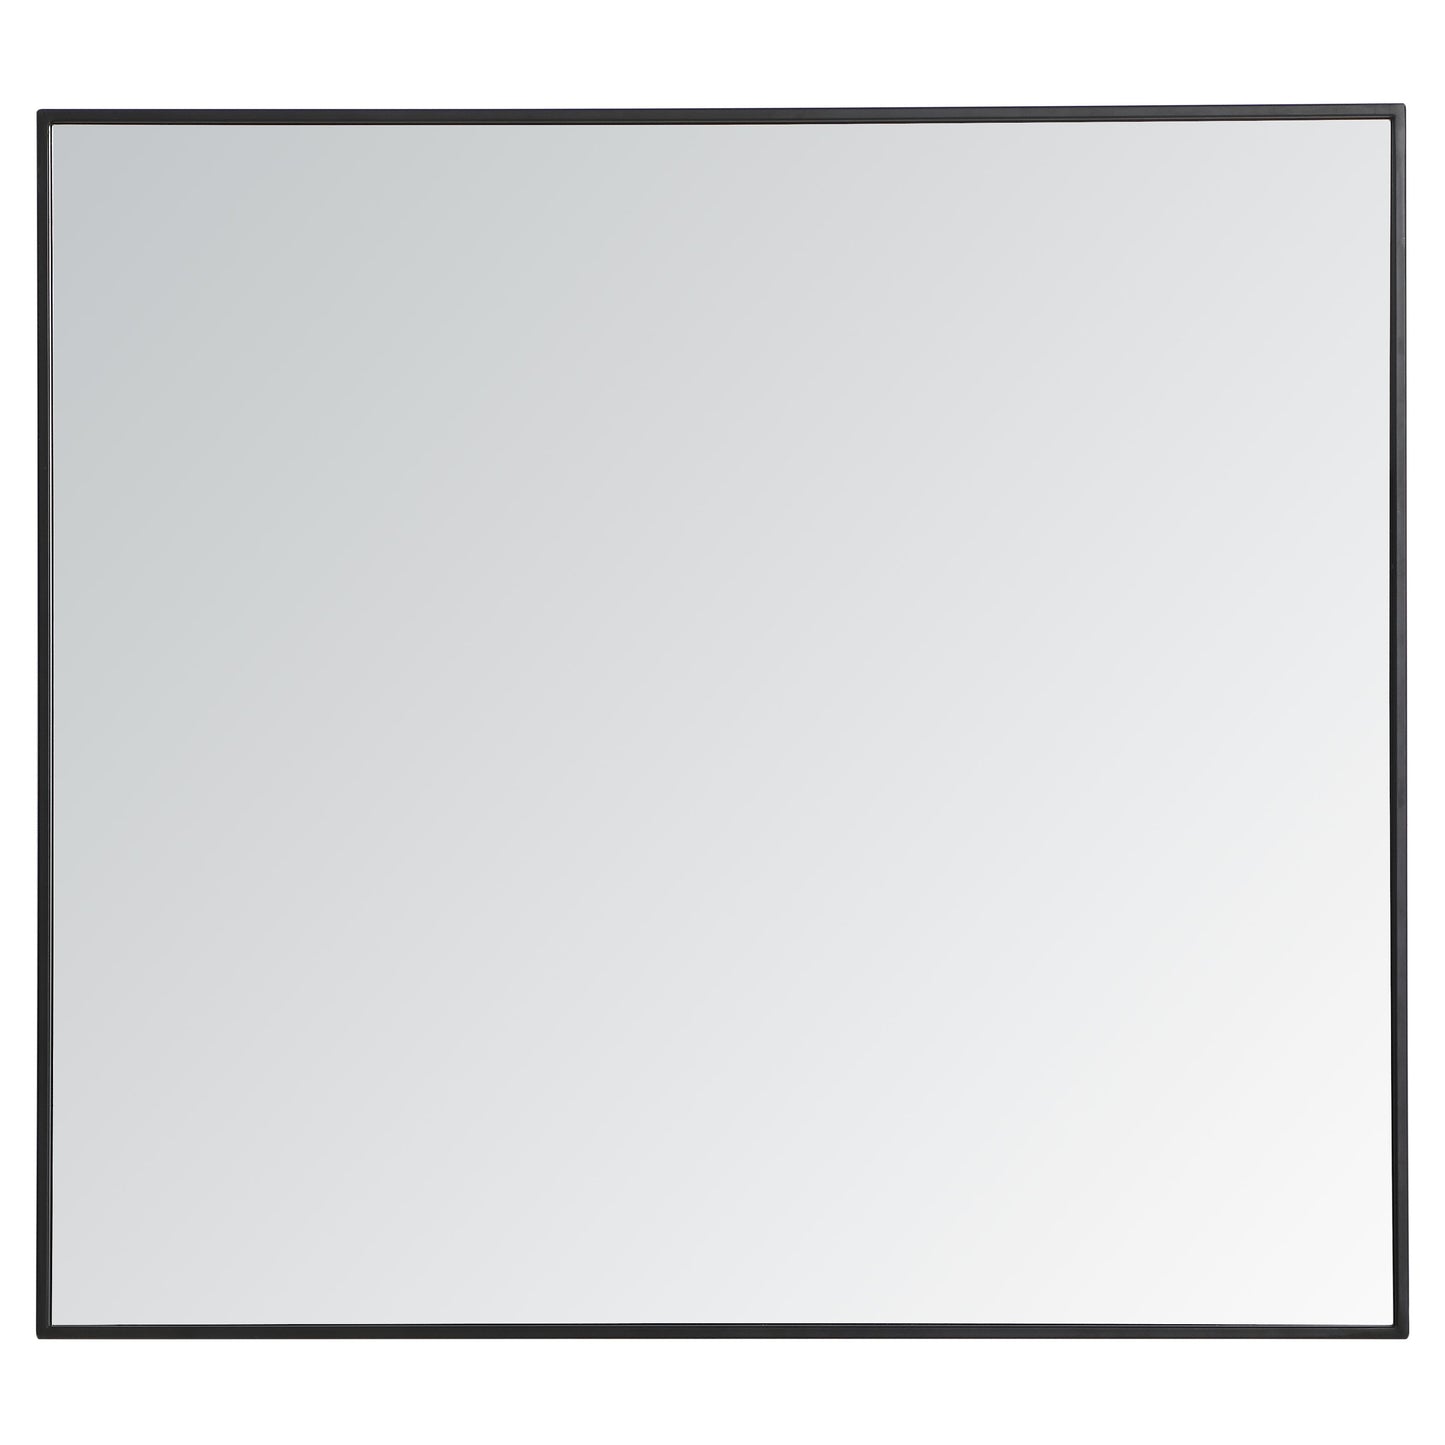 MR43640BK Monet 36" x 40" Metal Framed Rectangular Mirror in Black